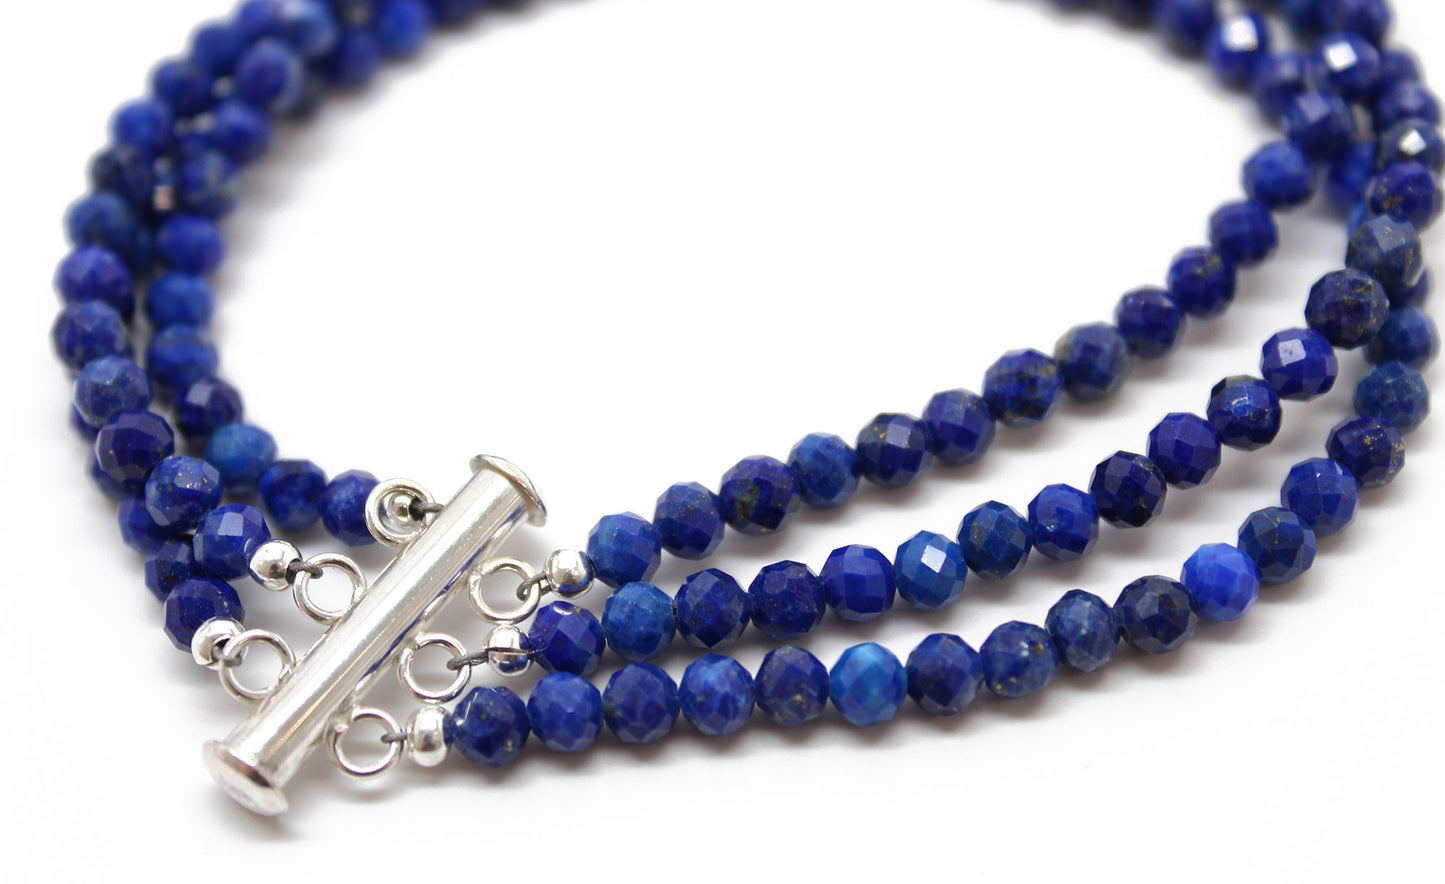 Lapis Lazuli Bracelet, Multi Strand Blue Gemstone, 7.5 Inches